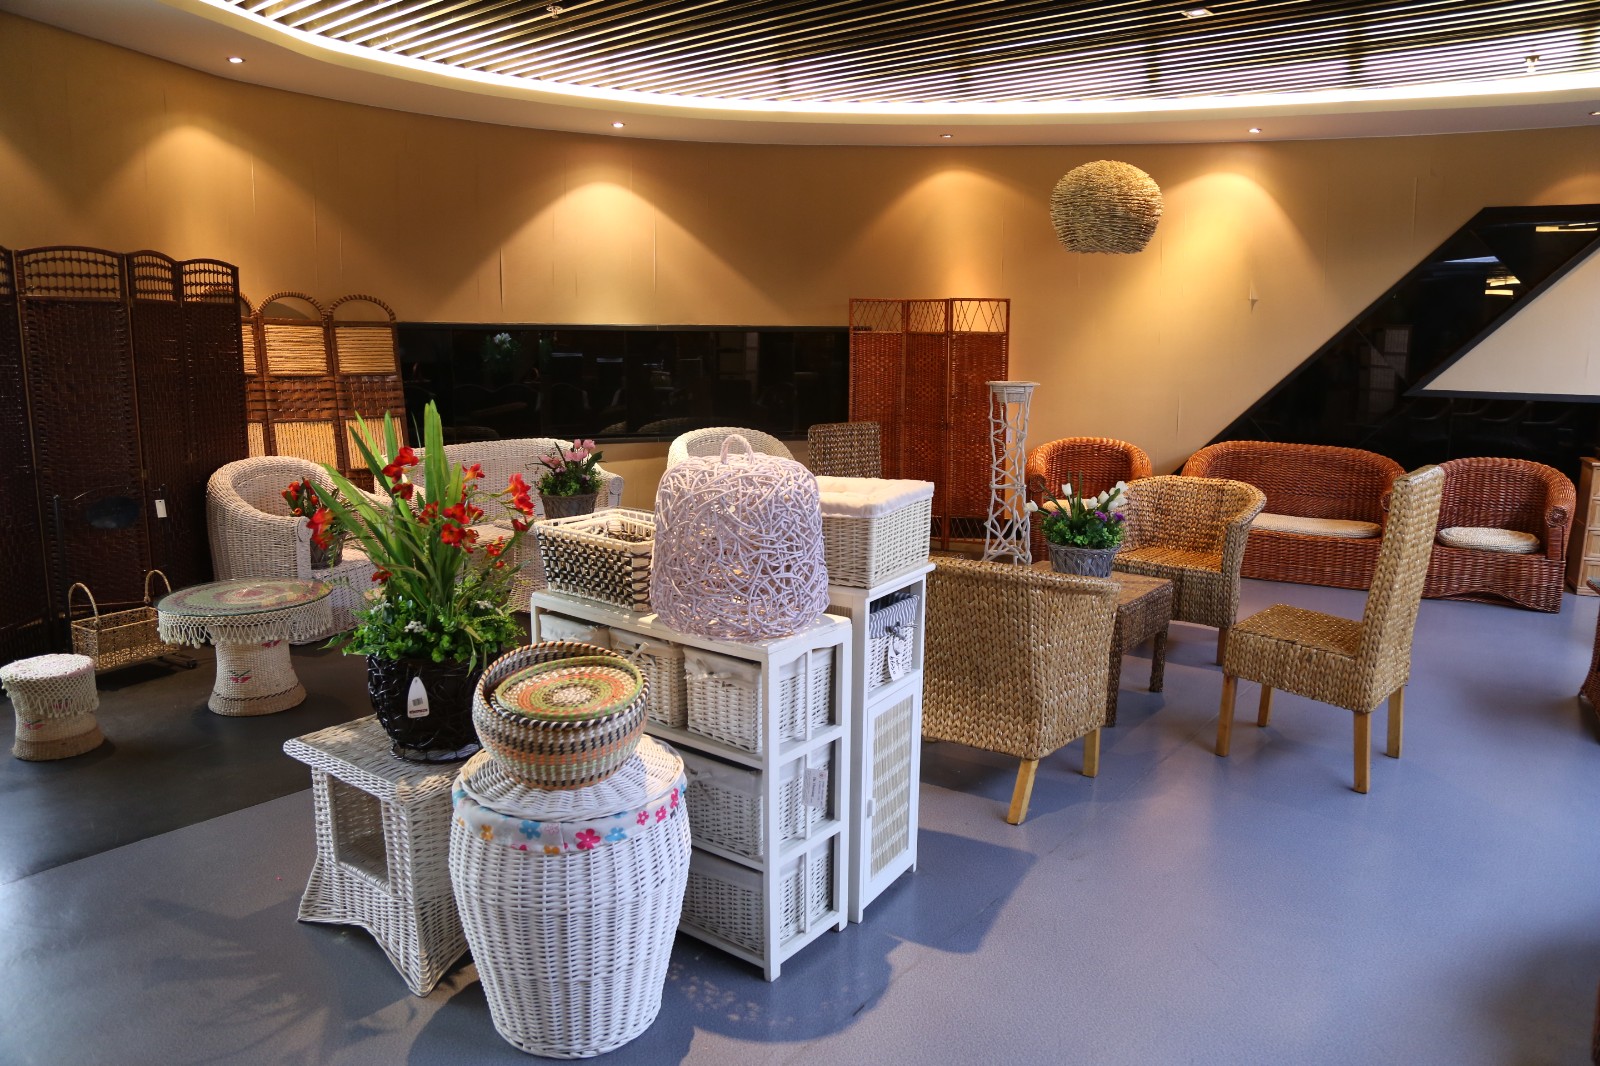 临沂鲁美达工艺品有限公司展厅内的柳编家具。